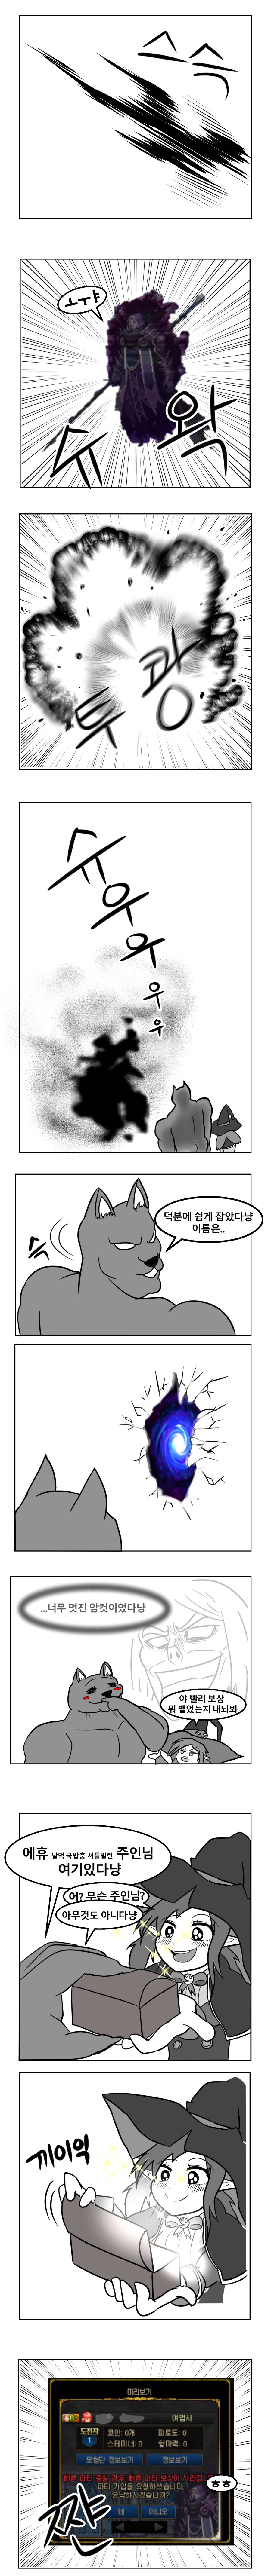 화홍옥의 저주 도는 만화_006.jpg